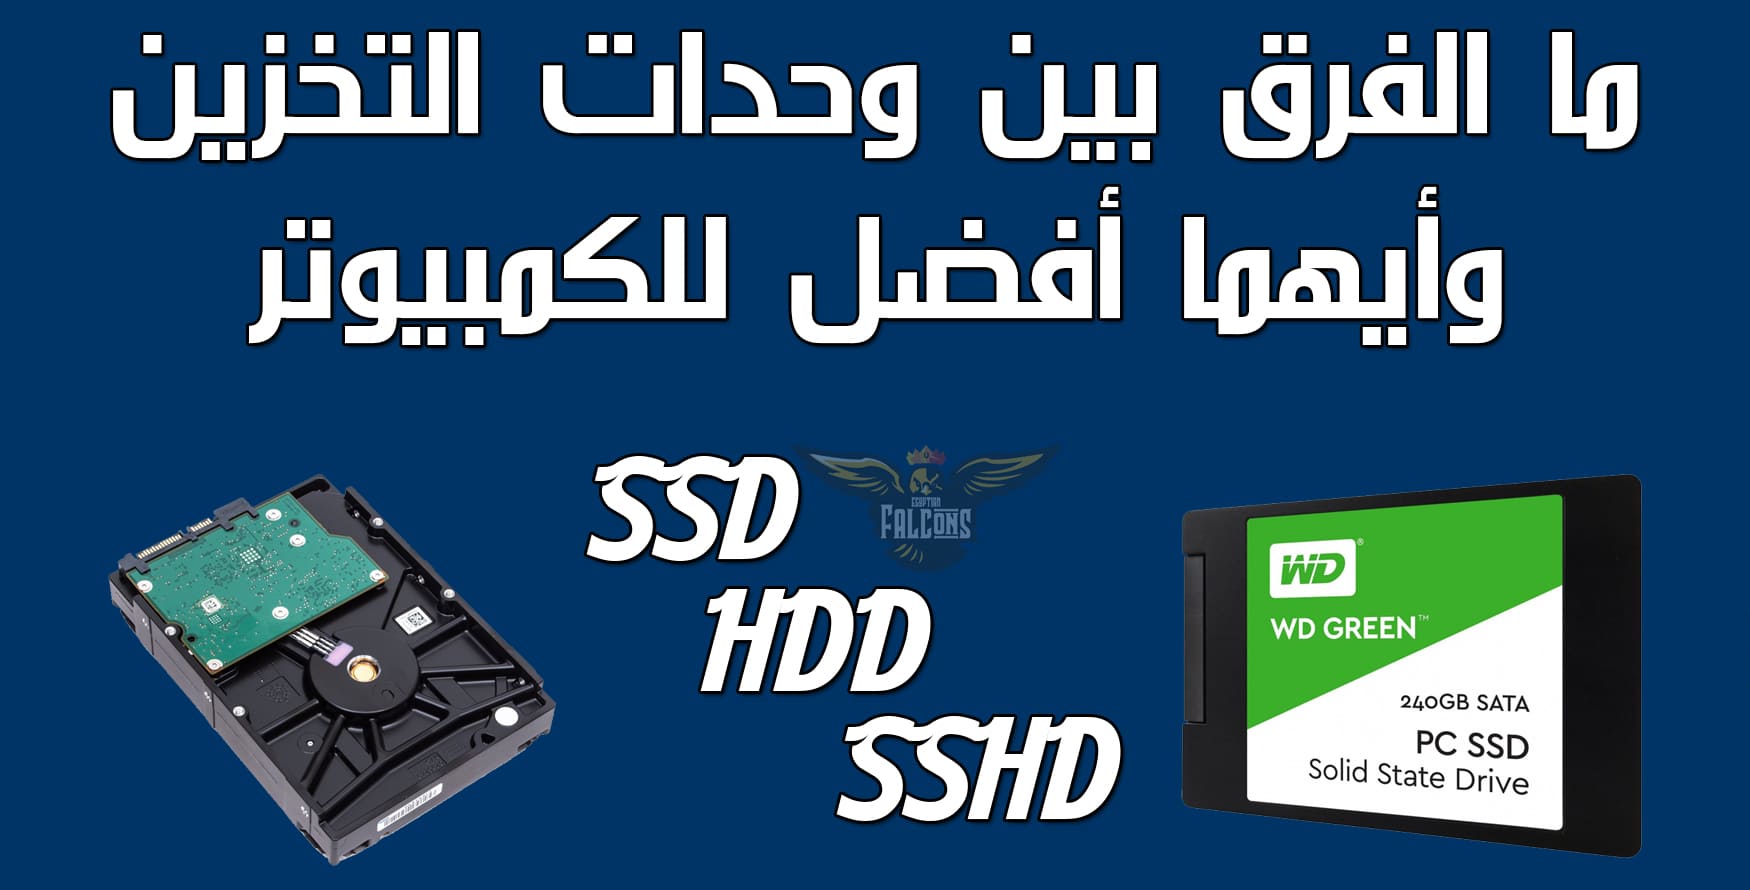 الفرق بين أقراص التخزين HDD و SSD و SSHD وايهما أفضل للكمبيوتر